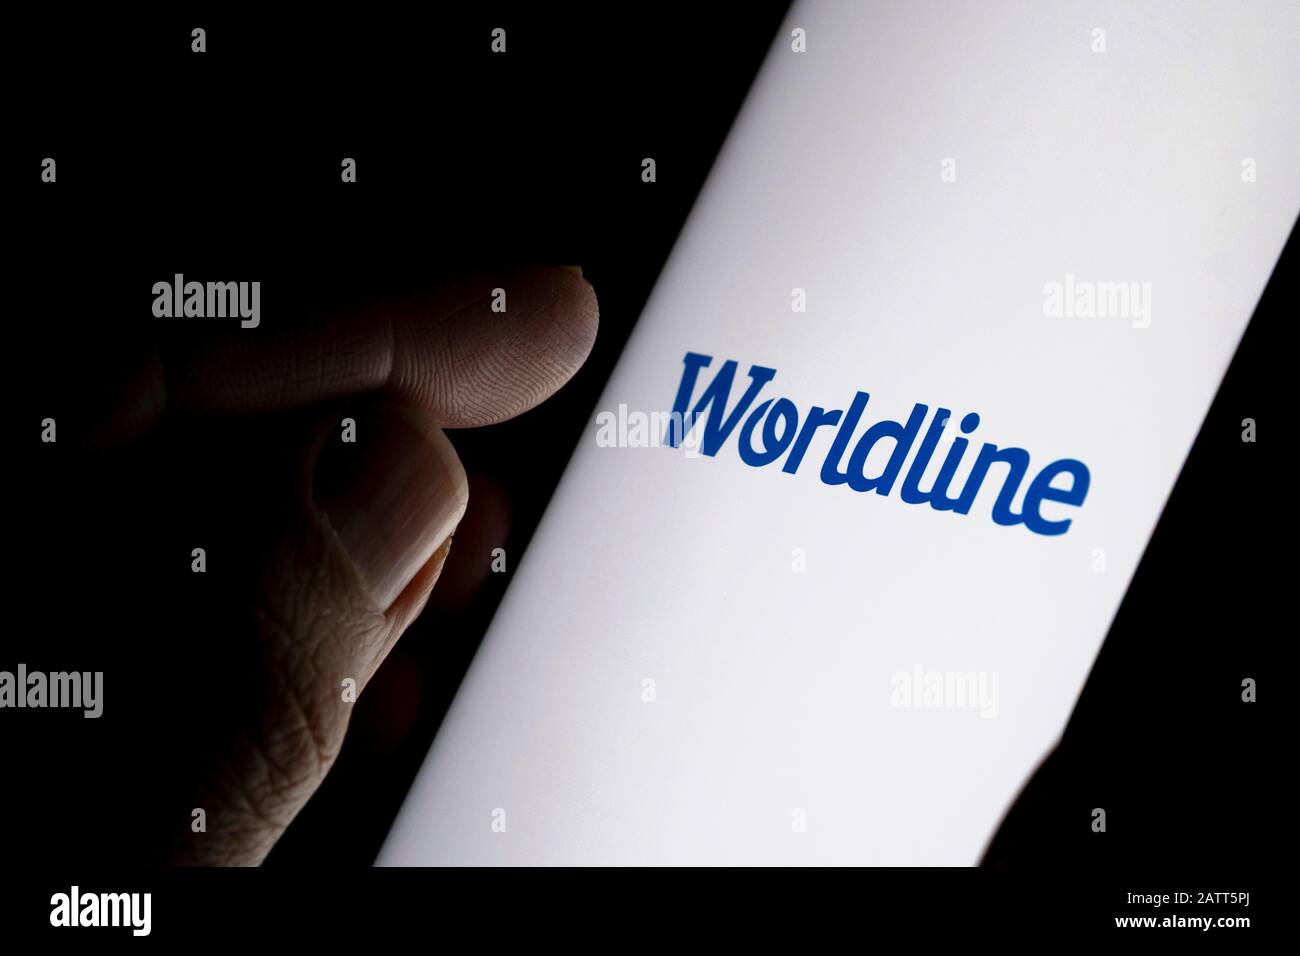 Logo de la société de paiement Worldline sur l'écran bleu et doigt sur le point de le toucher. Photo de concept. Banque D'Images